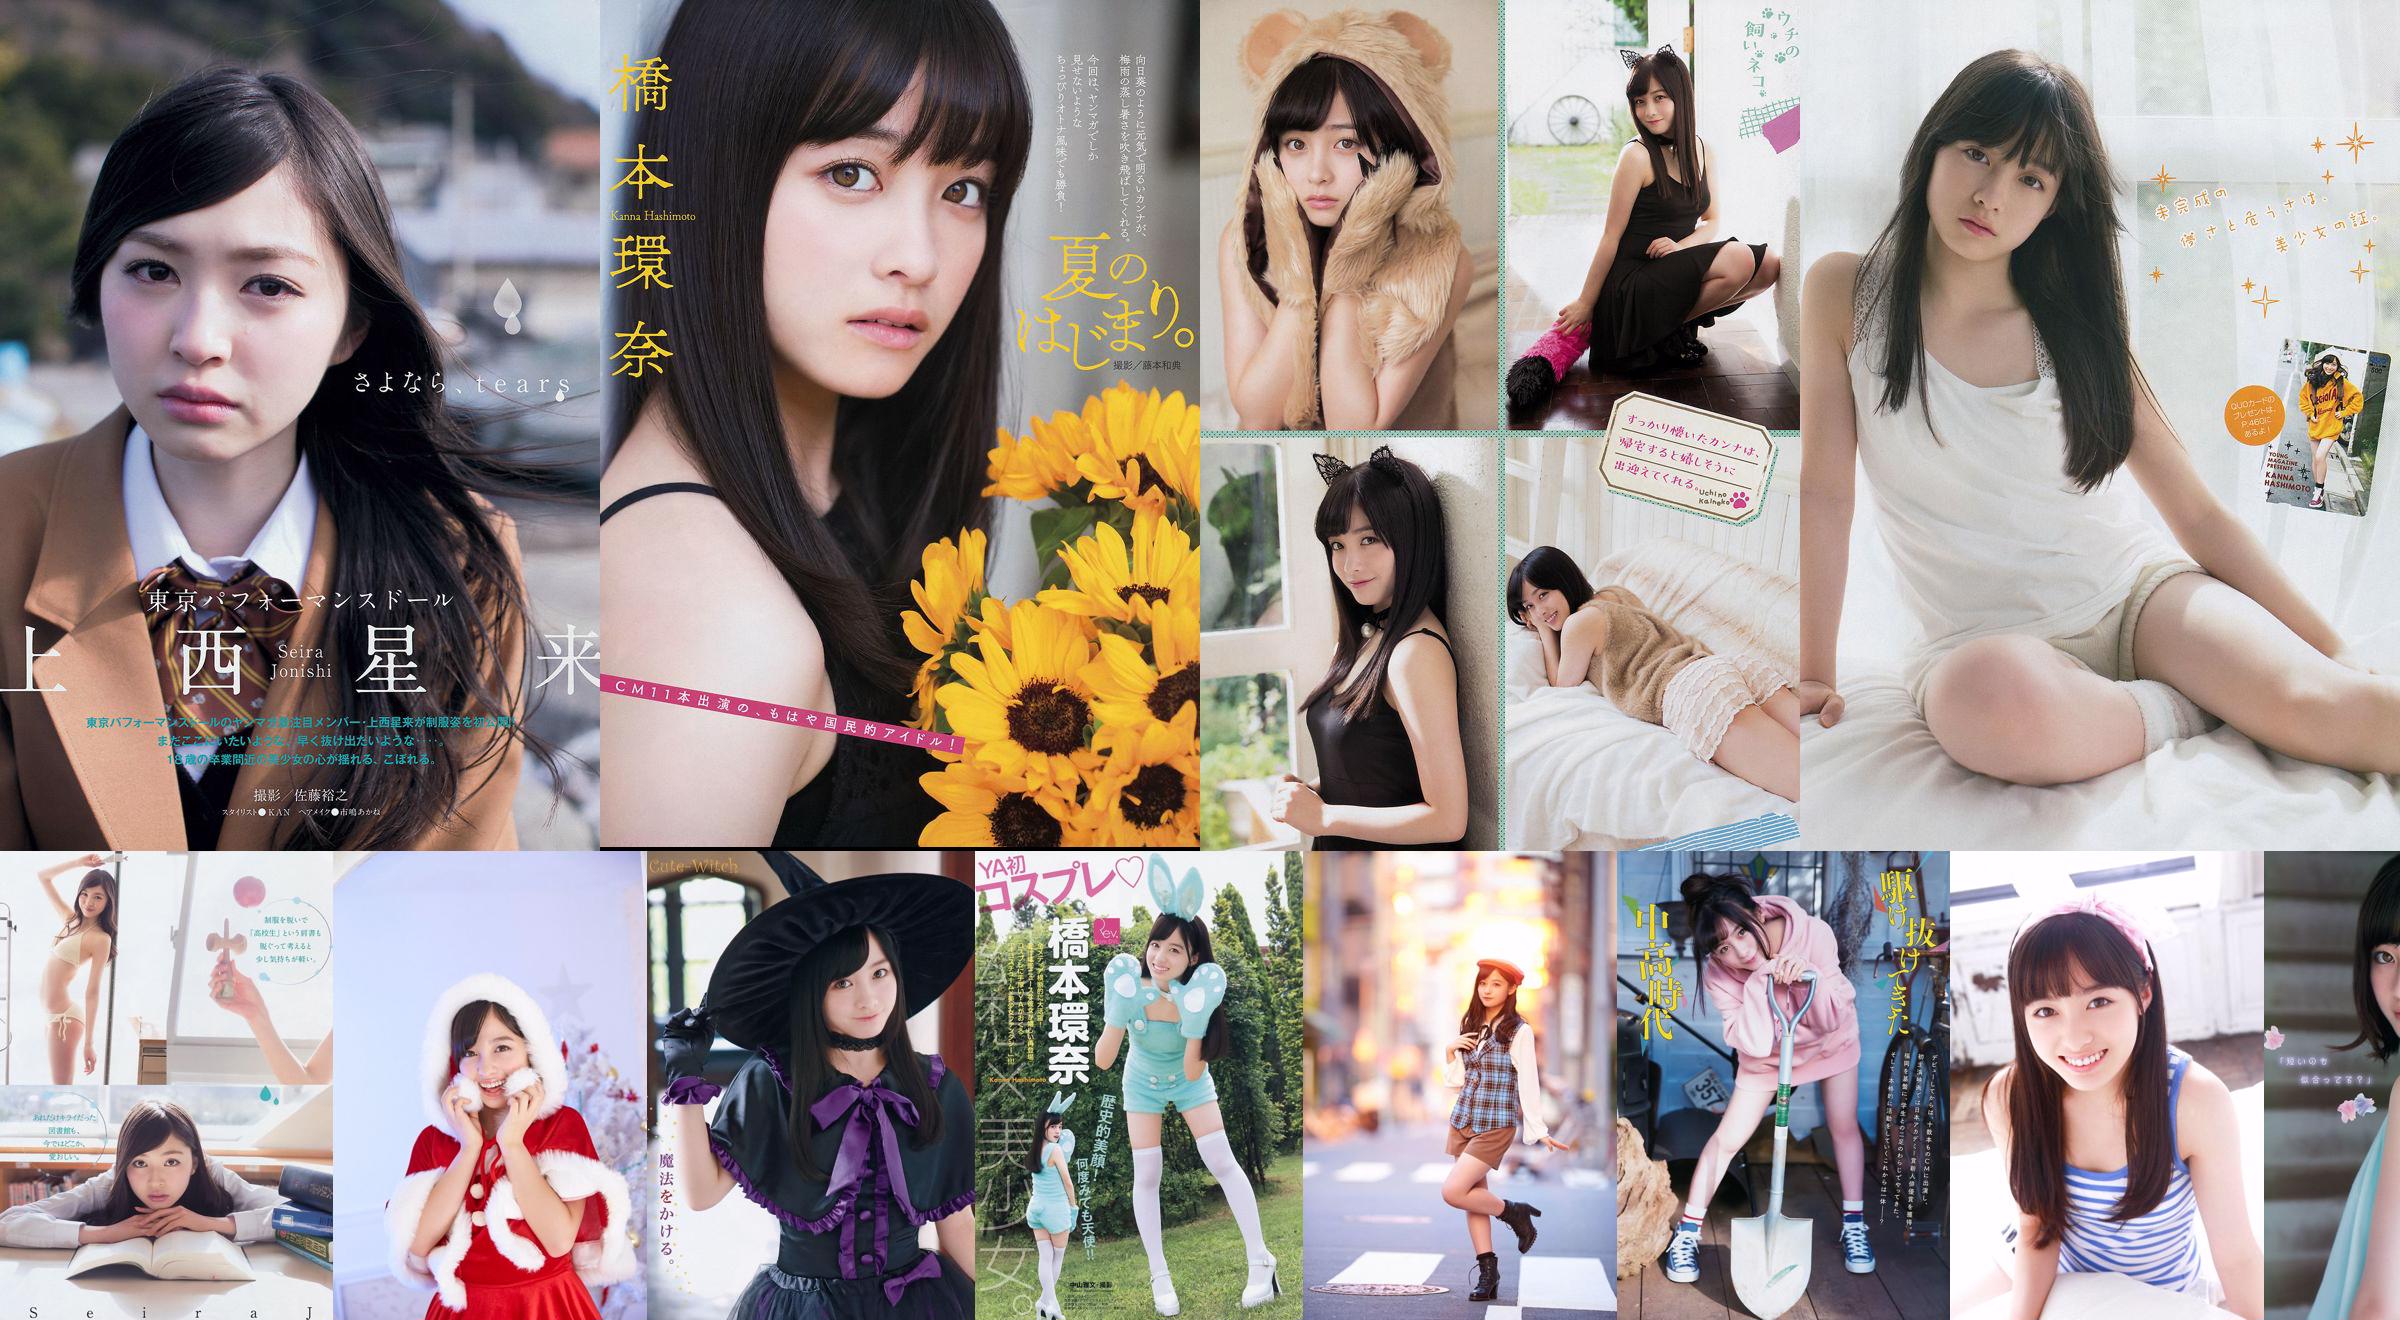 [Young Magazine] Kanna Hashimoto Yuria Kizaki 2014 Nr. 34 Foto No.2f990a Seite 2